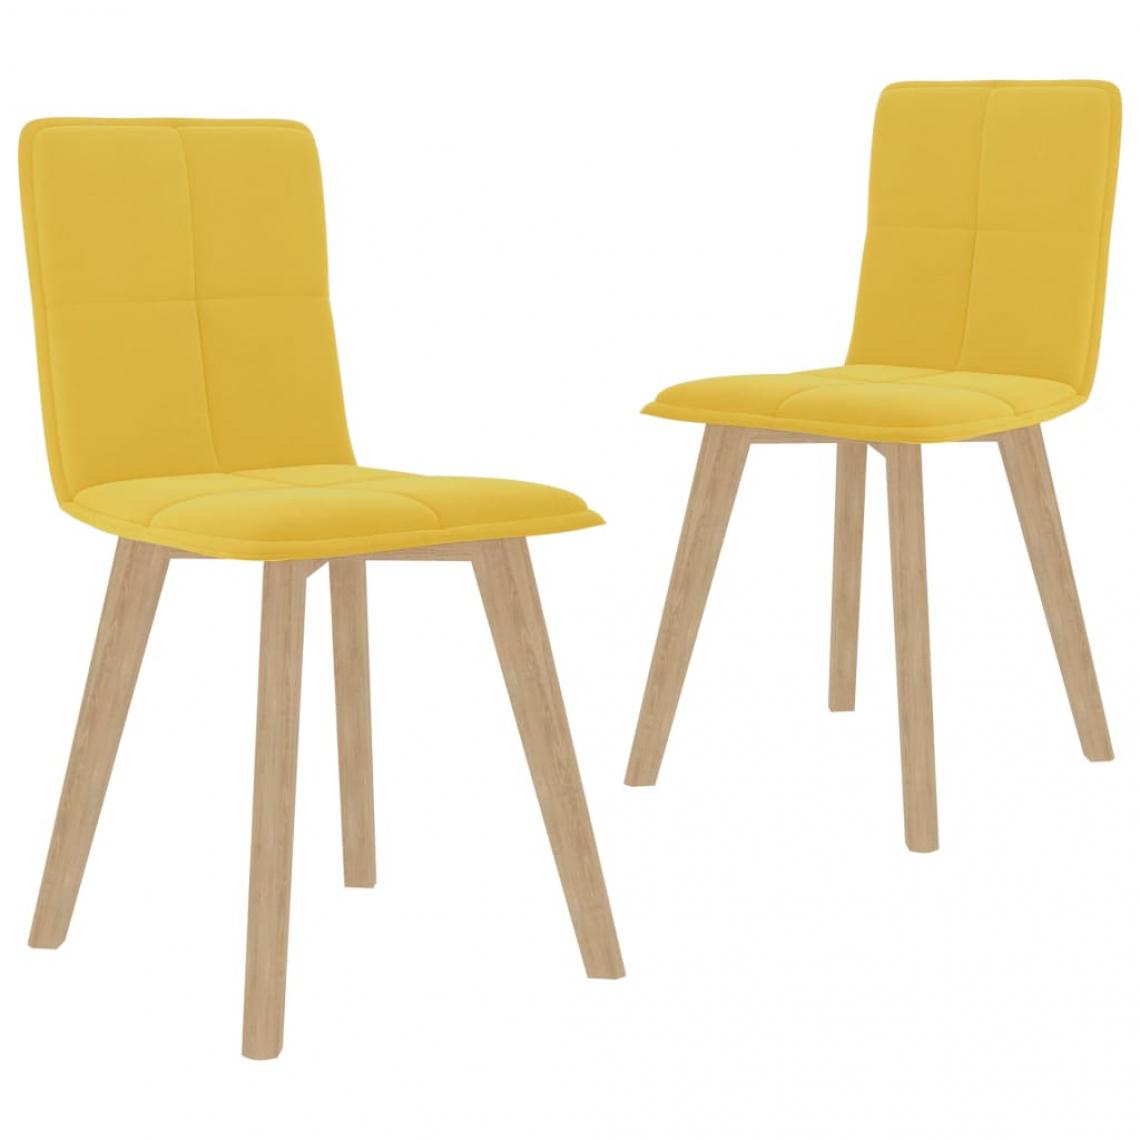 Decoshop26 - Lot de 2 chaises de salle à manger cuisine design moderne tissu jaune moutarde CDS020626 - Chaises